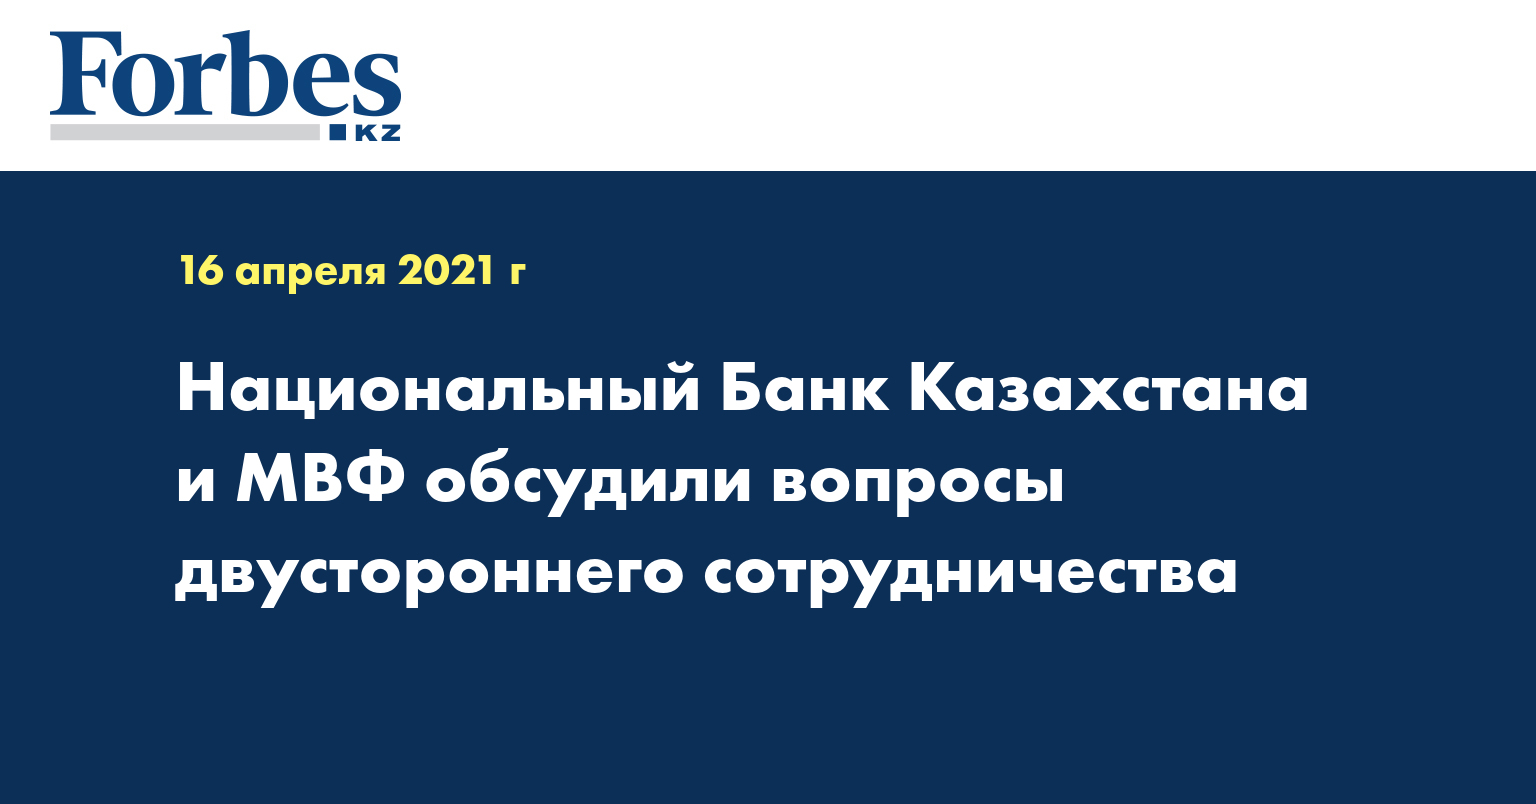 Национальный Банк Казахстана и МВФ обсудили вопросы двустороннего сотрудничества